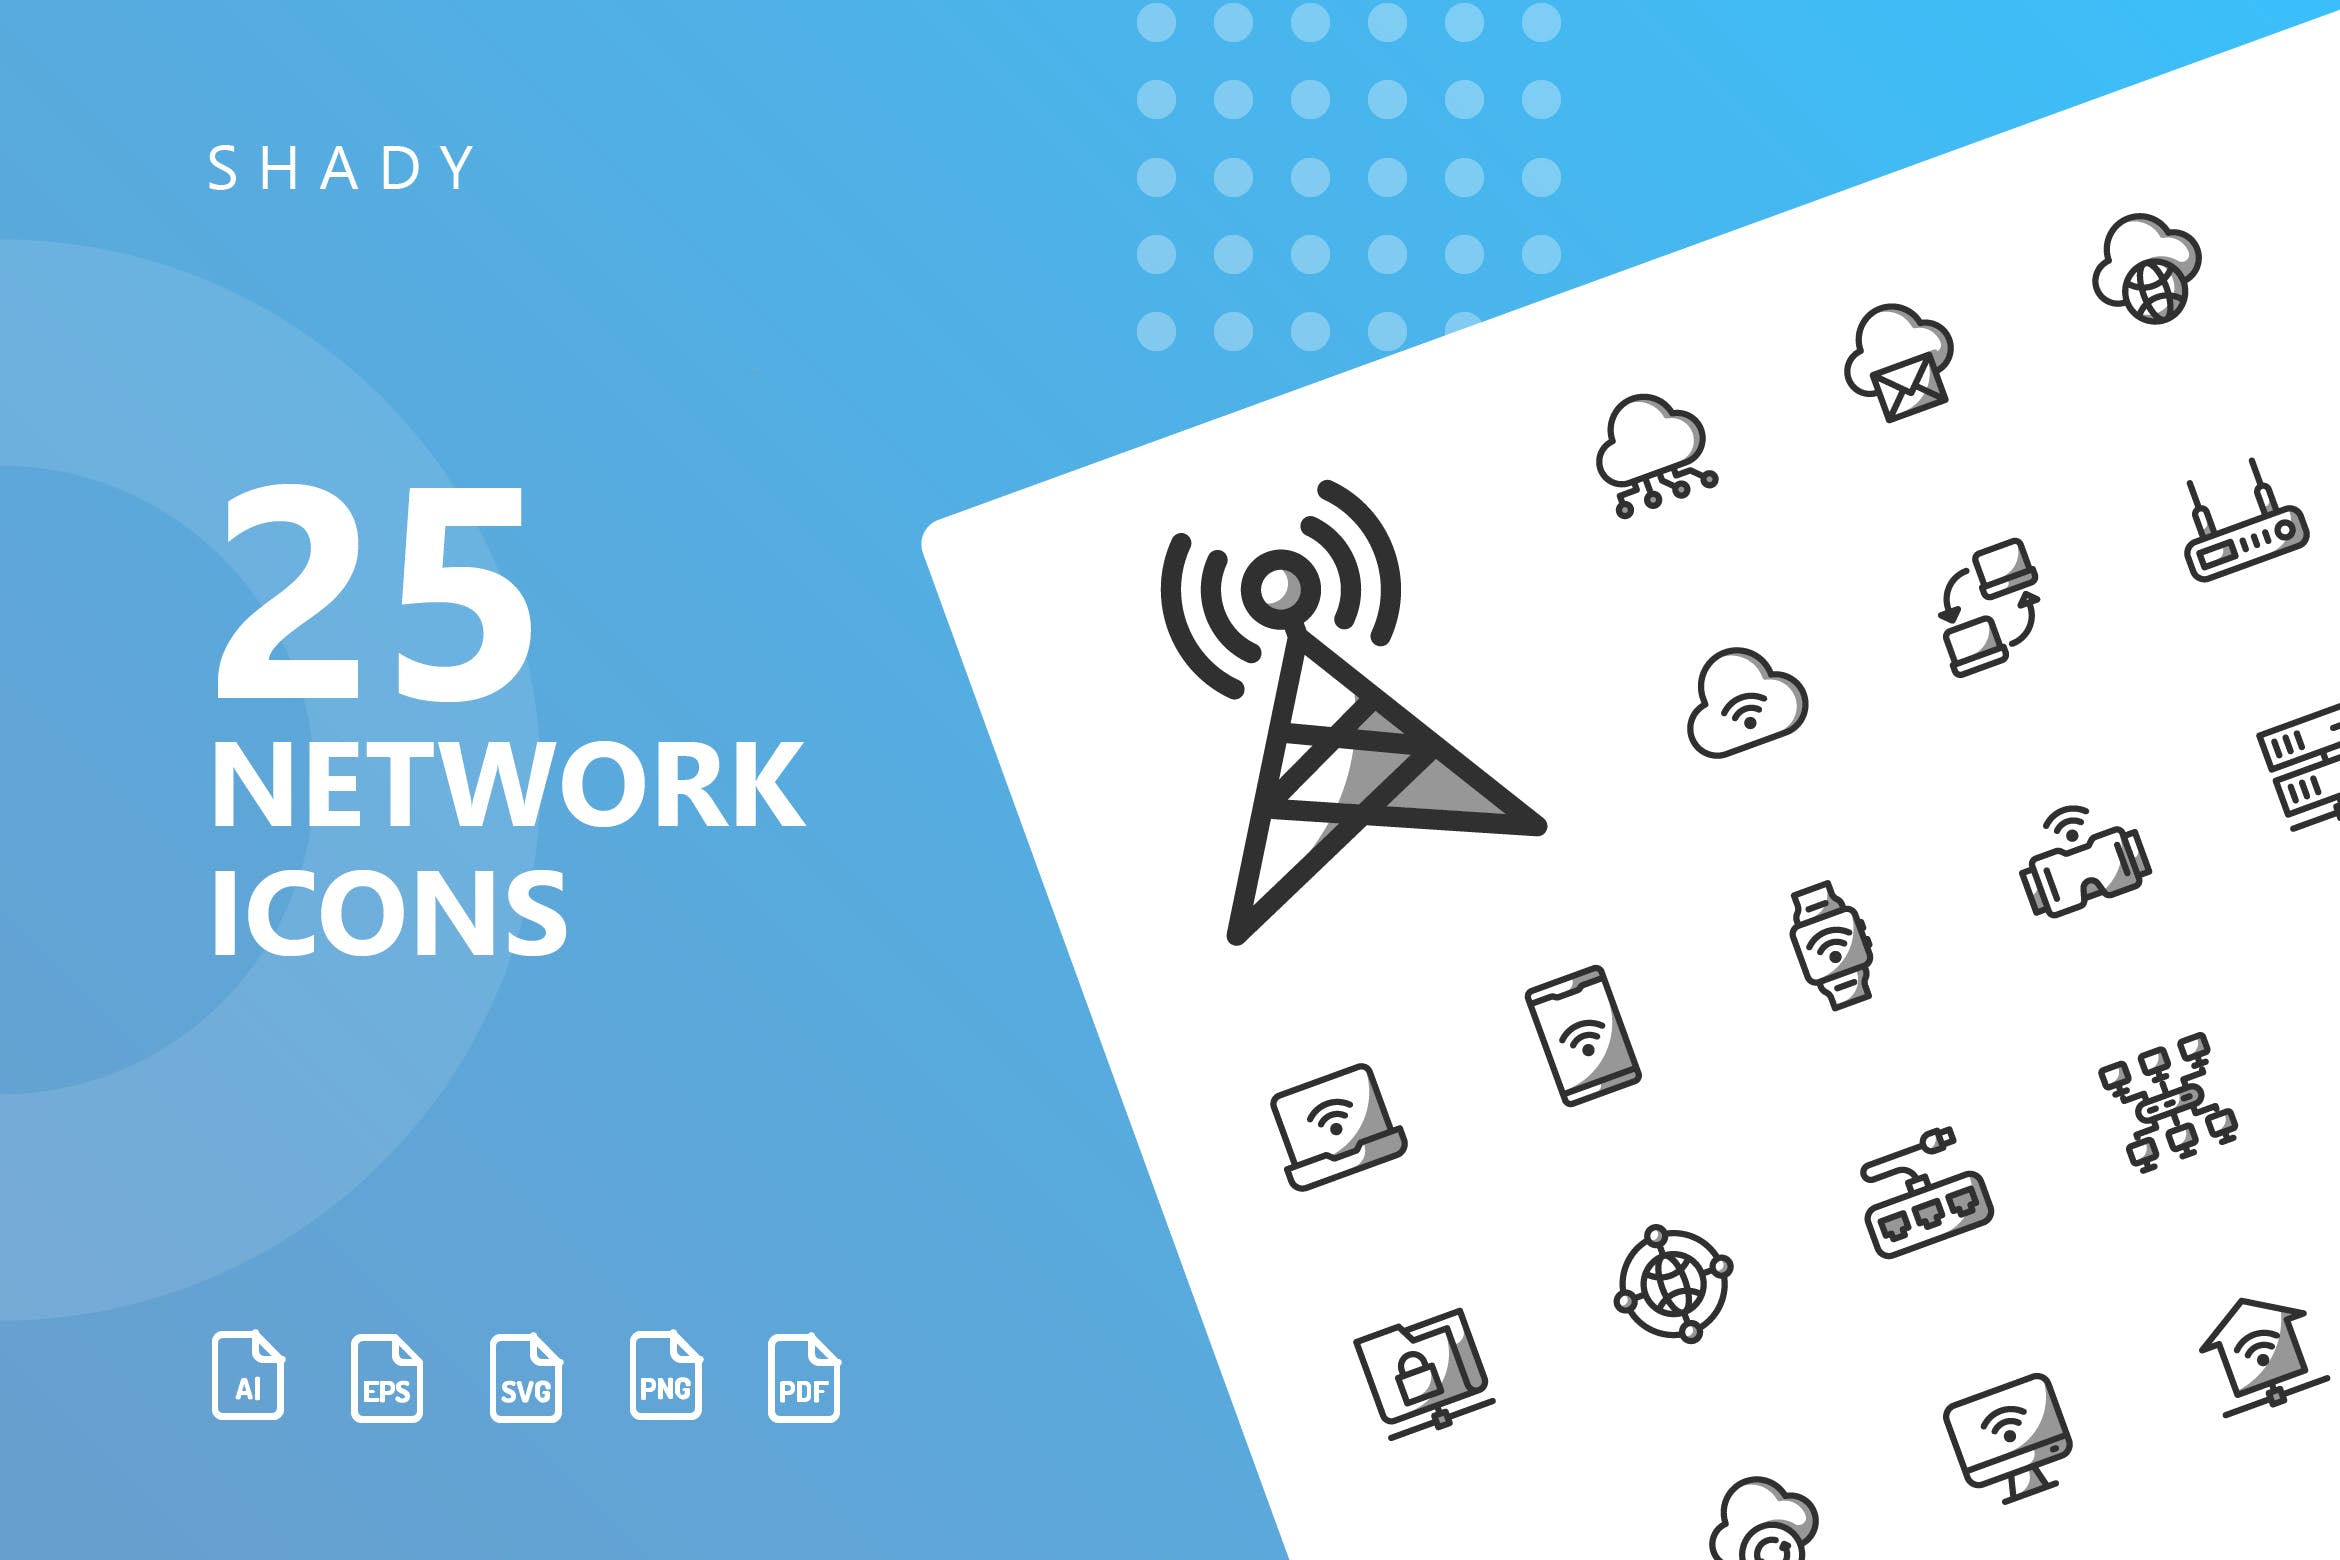 网络科技主题矢量阴影素材库精选图标 Network Shady Icons插图